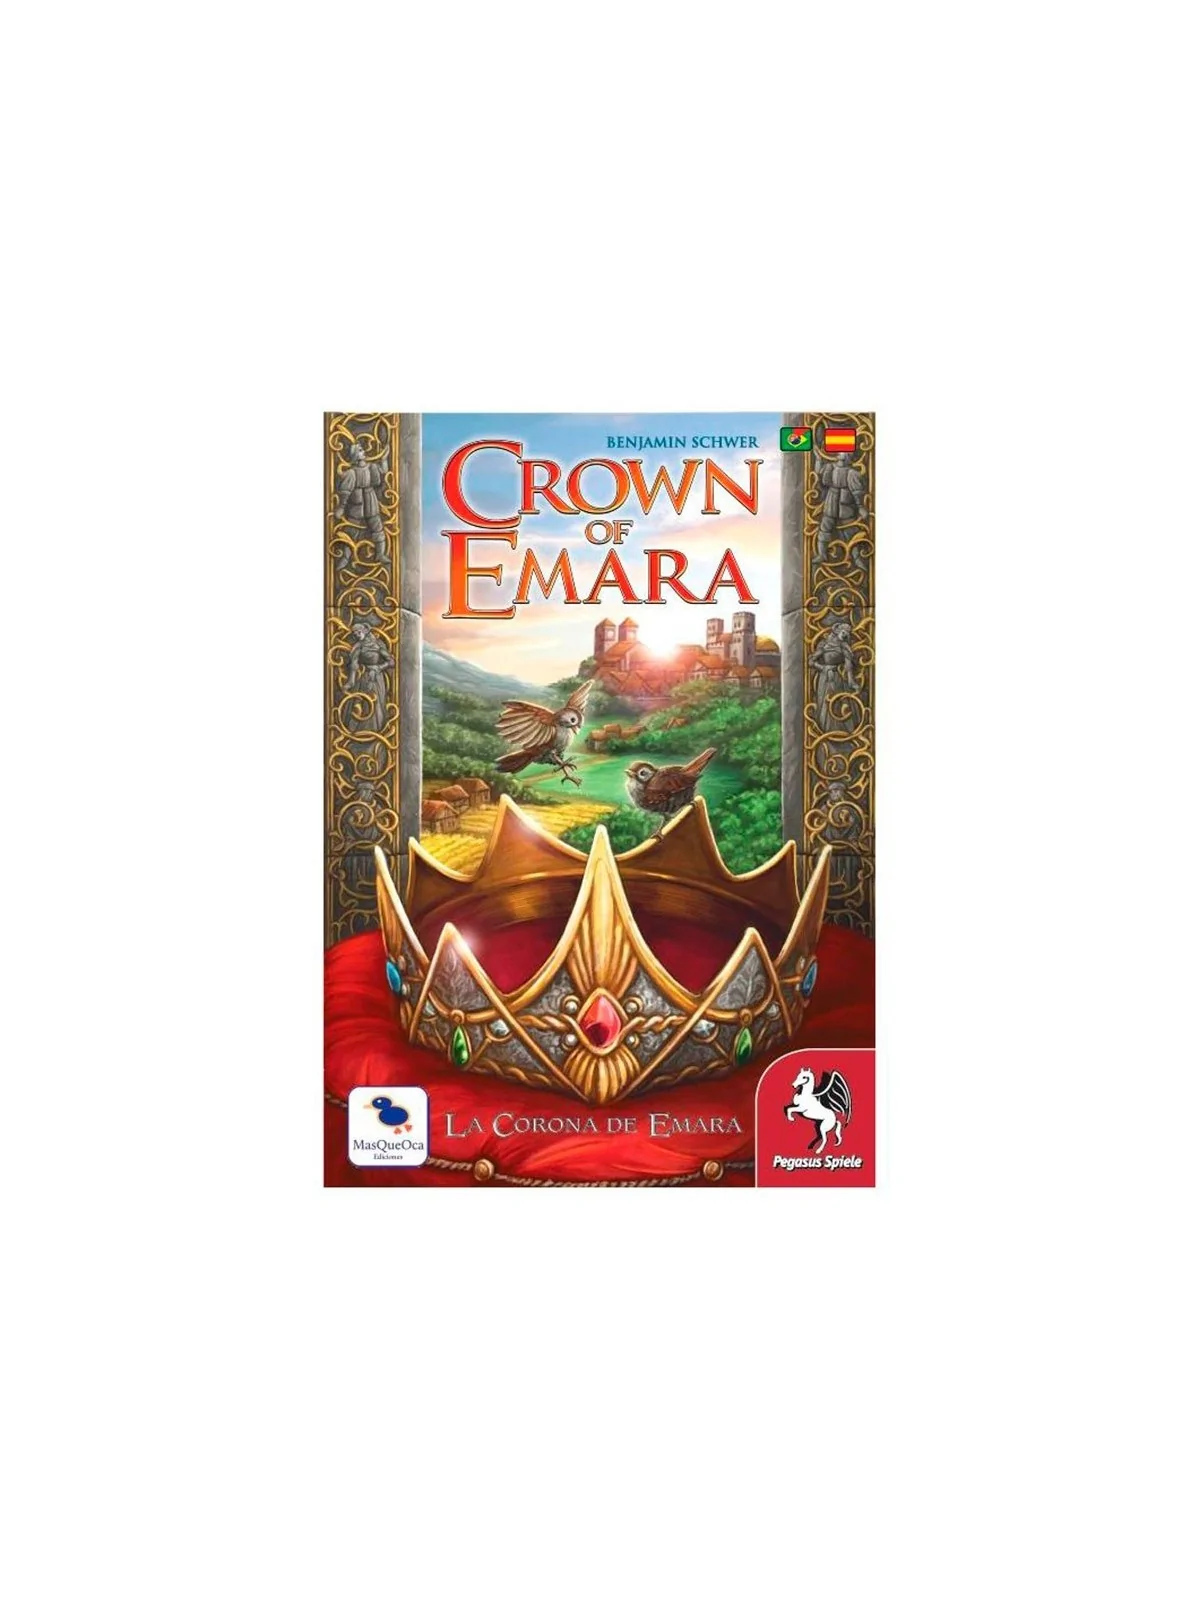 Comprar Crown of Emara barato al mejor precio 35,99 € de MasQueOca